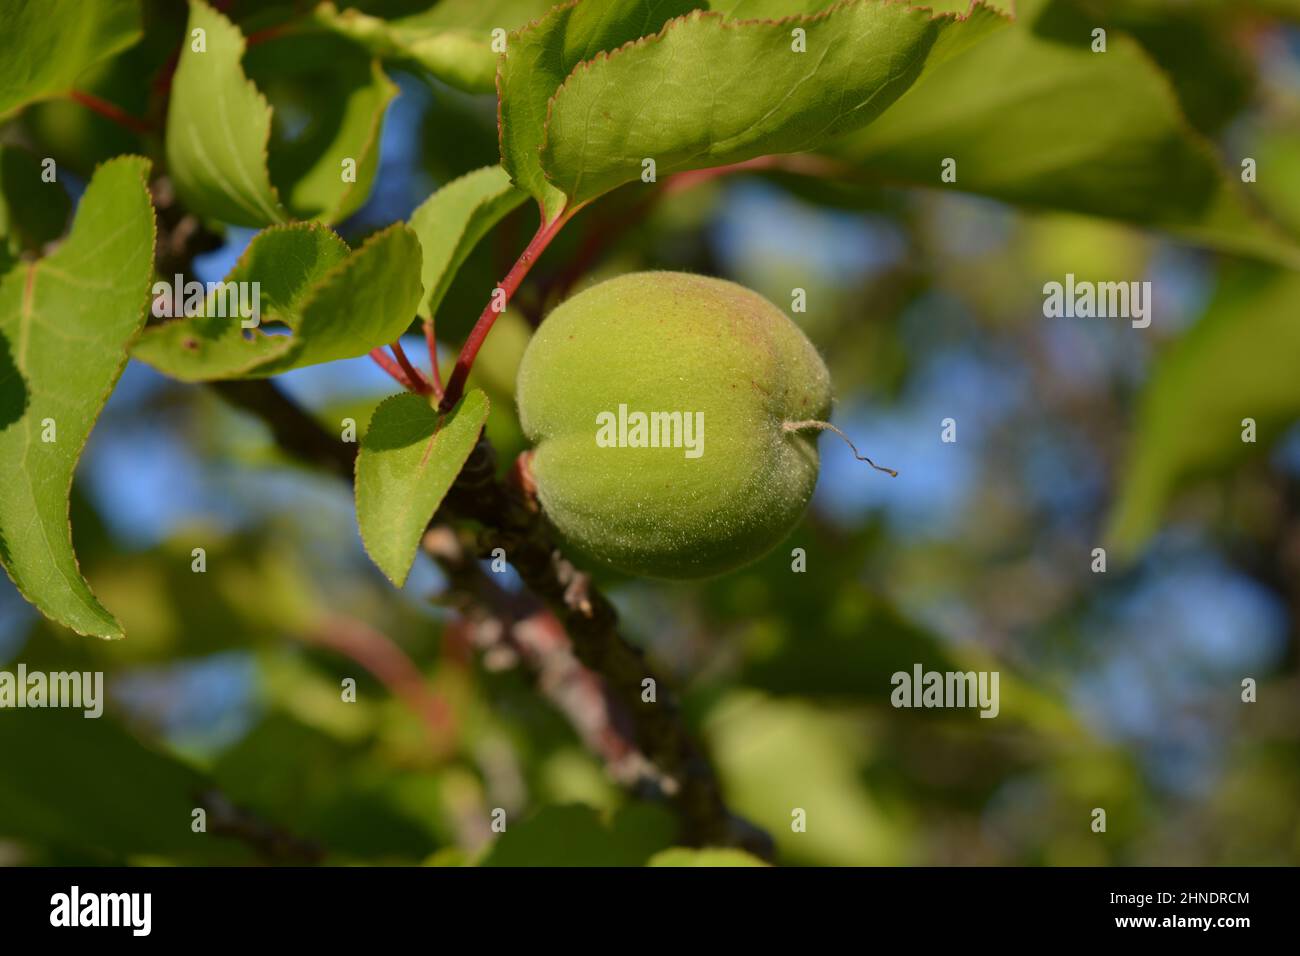 Apricot, or Prunus armeniaca ripening on tree, close up Stock Photo